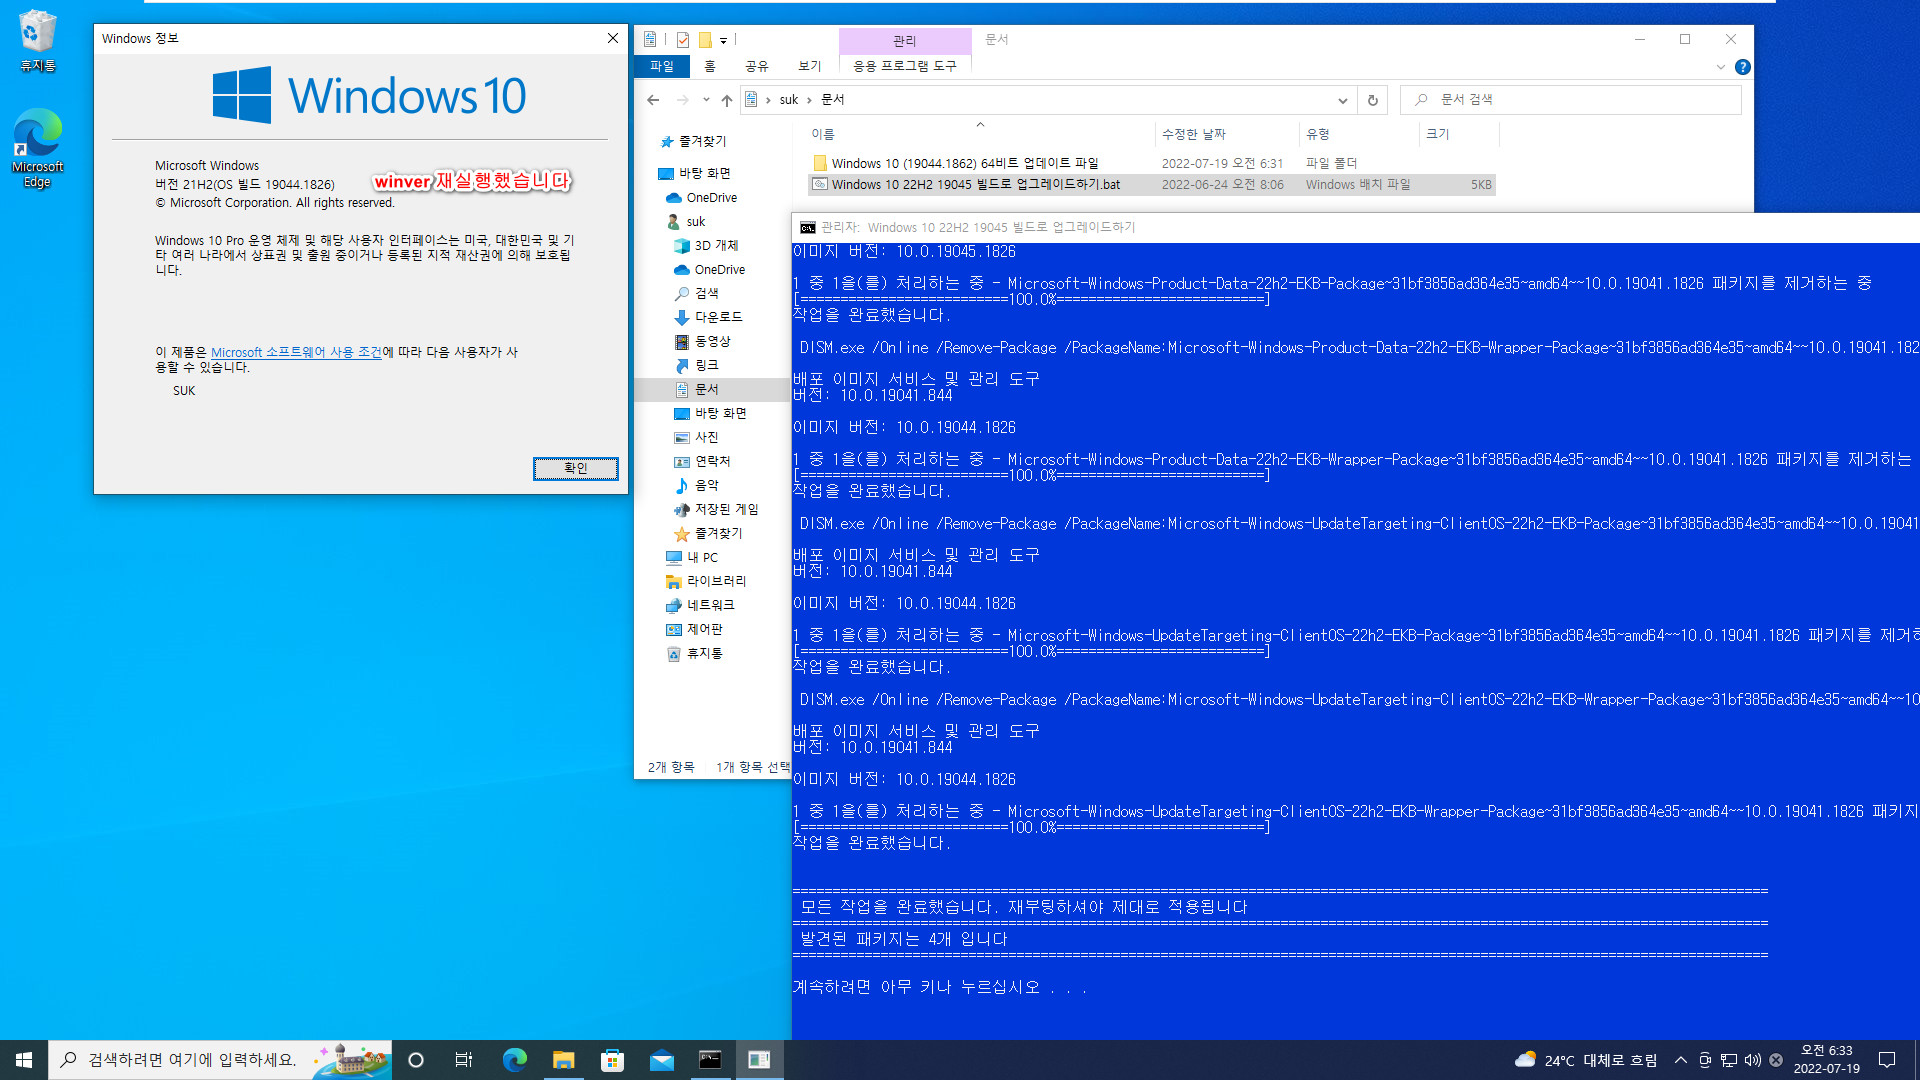 2022-07-19 화요일 - 릴리스 프리뷰 - Windows 10 버전 21H2, 빌드 19044.1862 - 공용 누적 업데이트 KB5015878 - 버전 22H2, 빌드 19045으로 설치 테스트 2022-07-19_063325.jpg